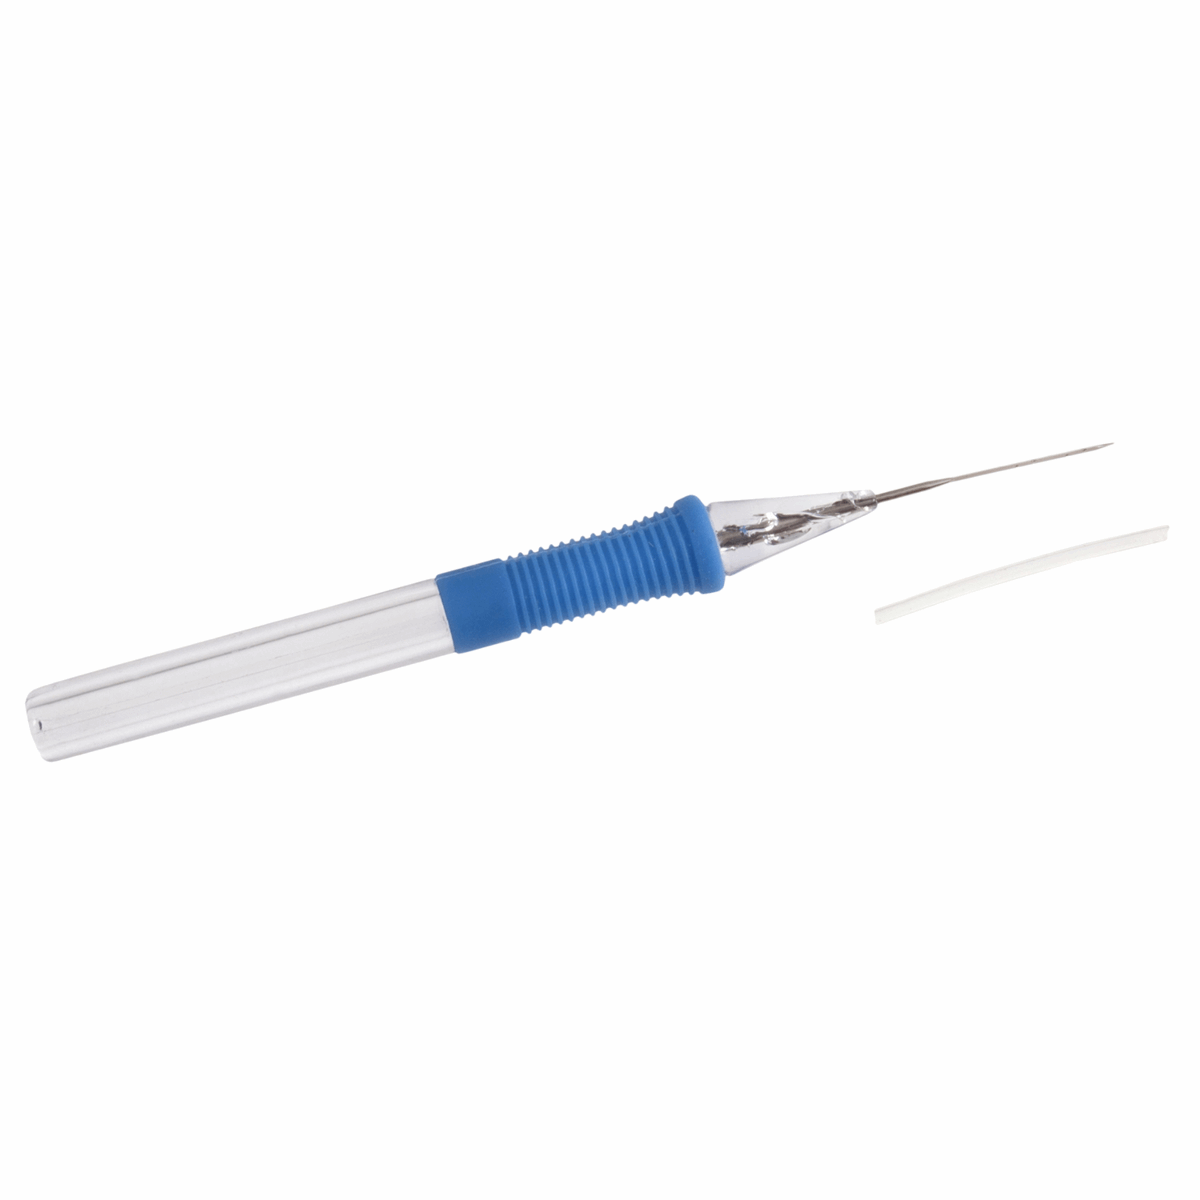 Single Needle Felting Tool